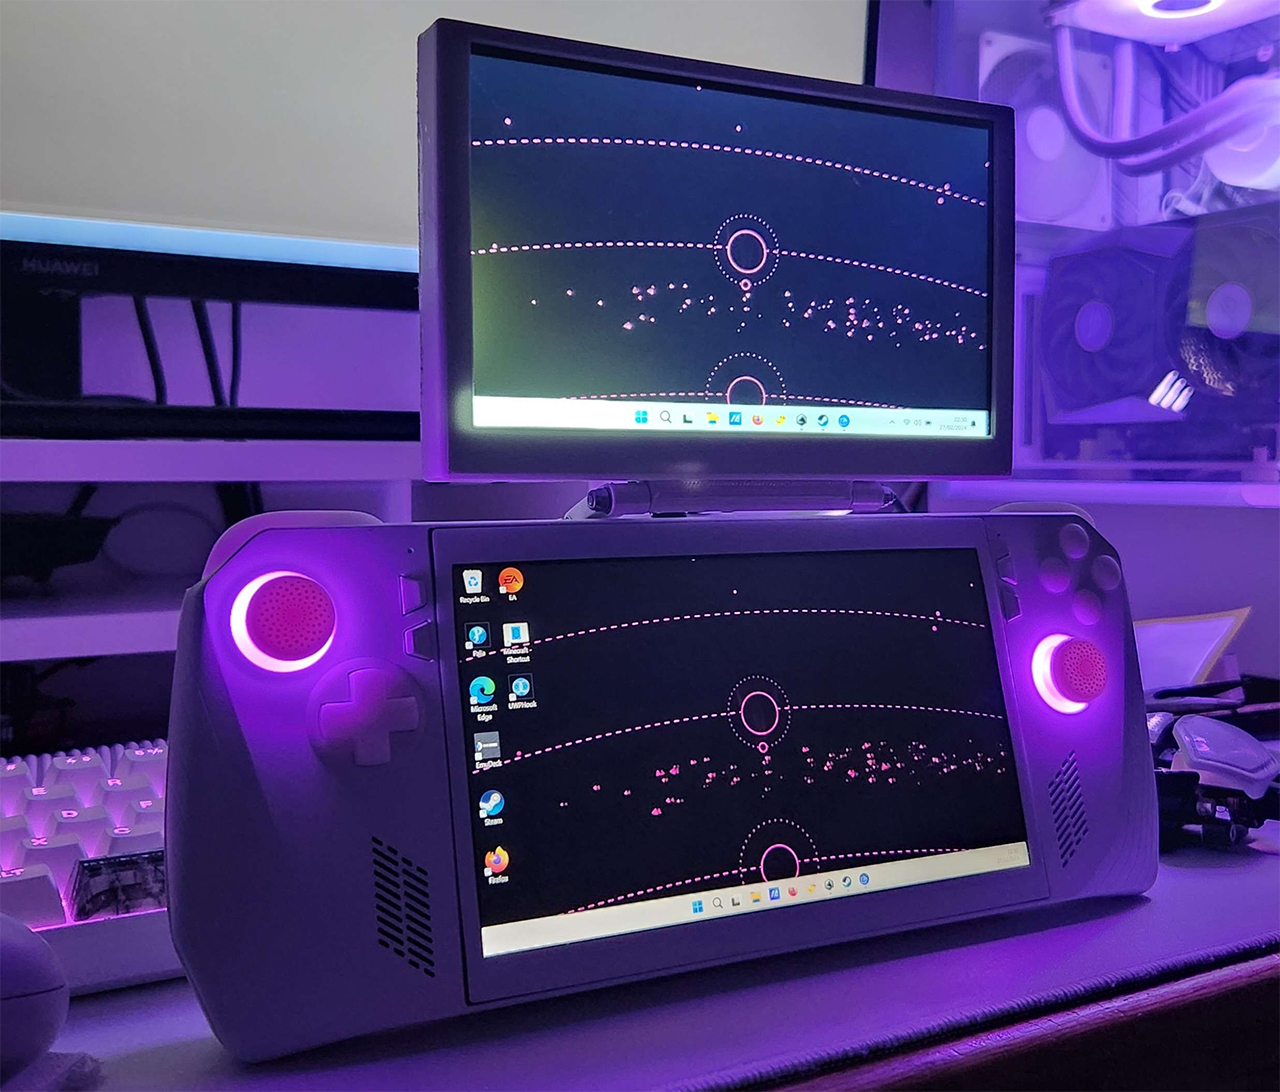 Asus ROG Ally zamienia się w handheld do gier podobny do Nintendo 3DS dzięki modyfikacji sprzętowej DIY z dwoma ekranami